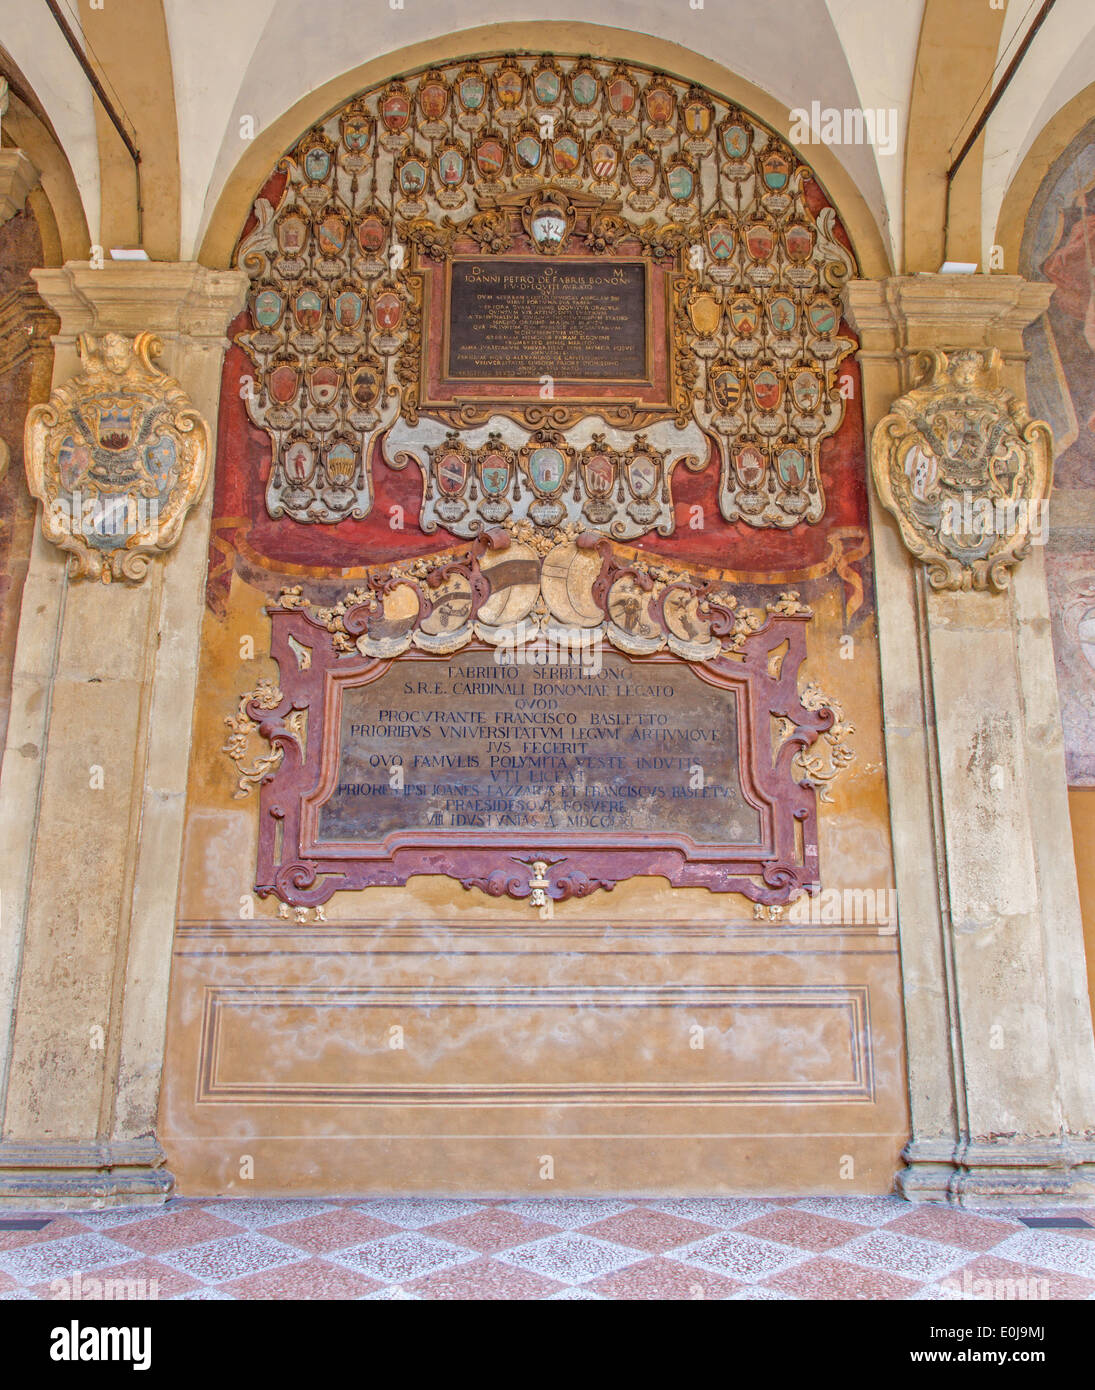 BOLOGNA, Italien - 15. März 2014: Fresken und Epitaphien aus externen Atrium des Archiginnasio Stockfoto